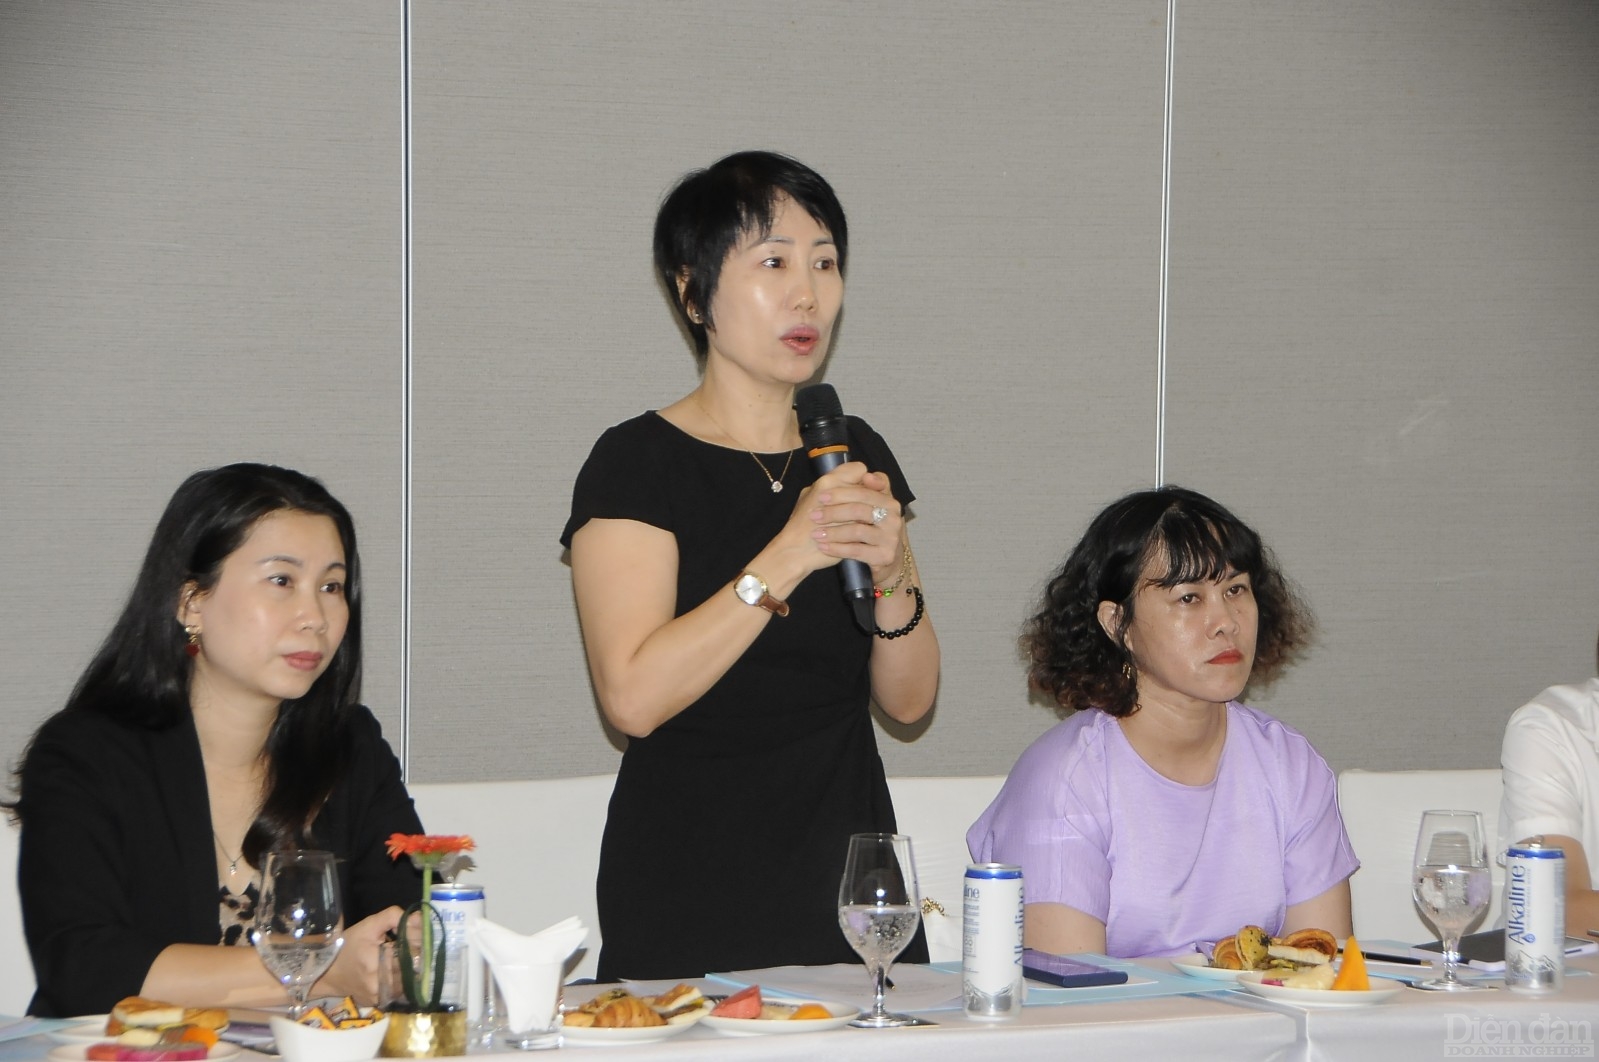 Bà Trần Thị Hà Bình - Giám đốc Nhân sự Công ty May mặc Bowker Việt Nam phát biểu ý kiến tại cuộc họp.